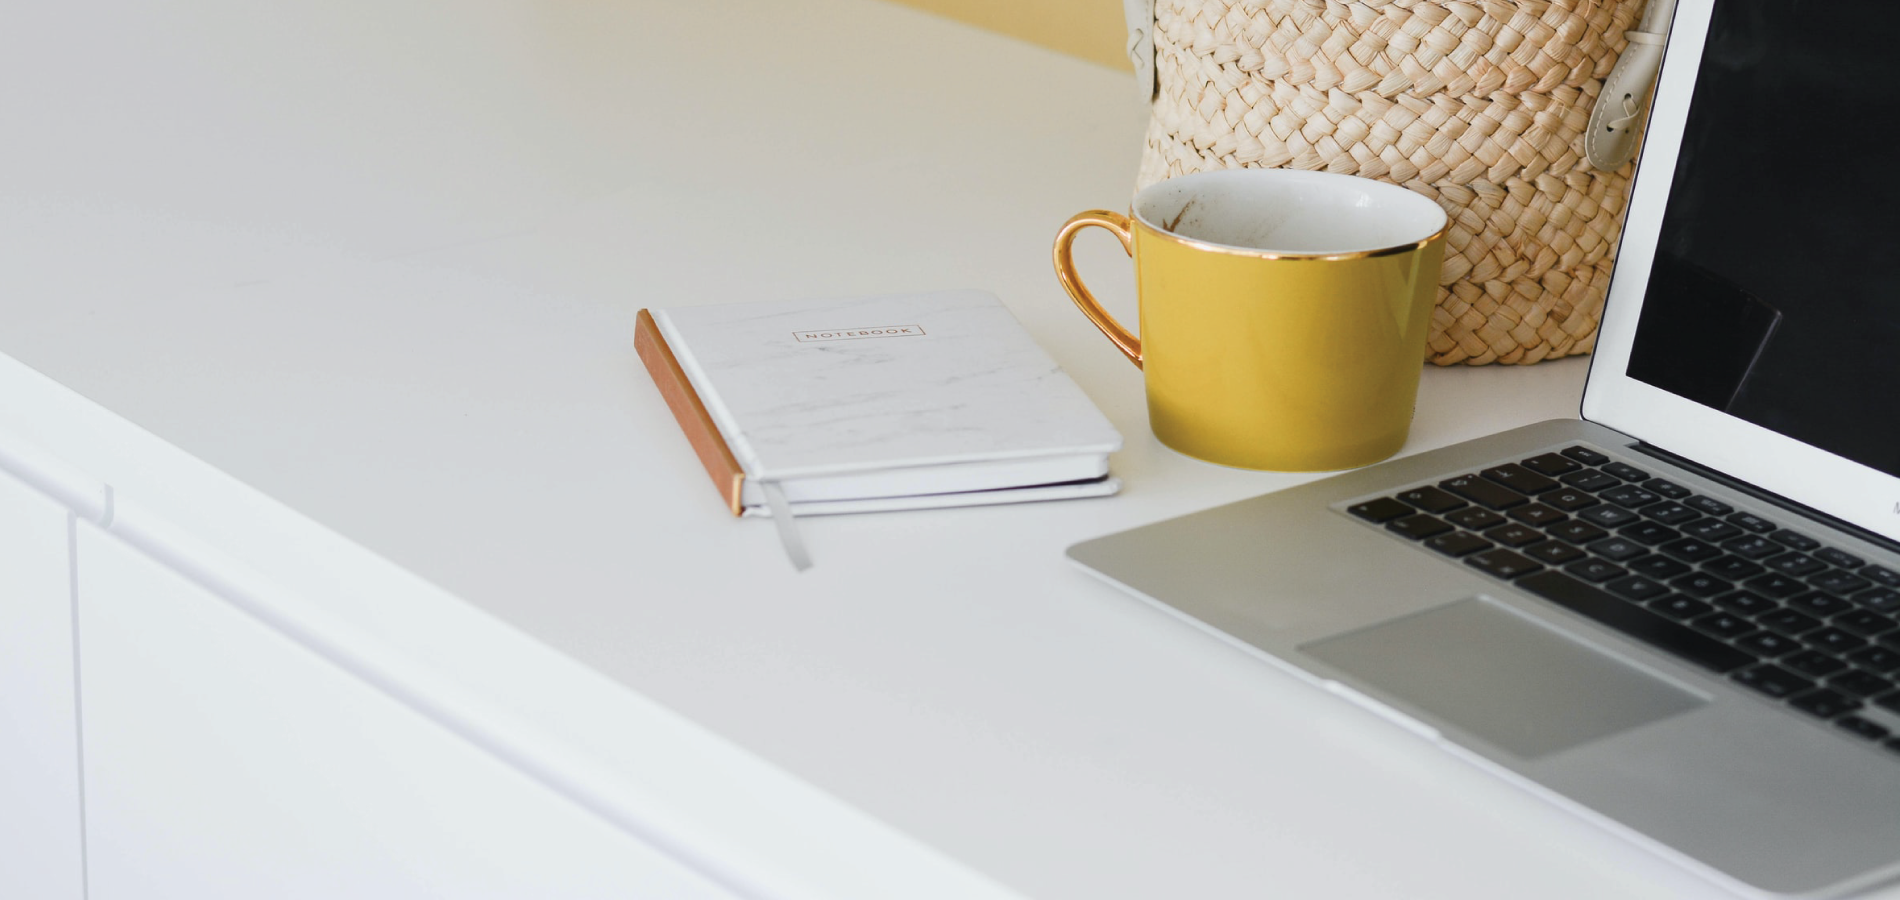 Laptop next to yellow mug on white desk